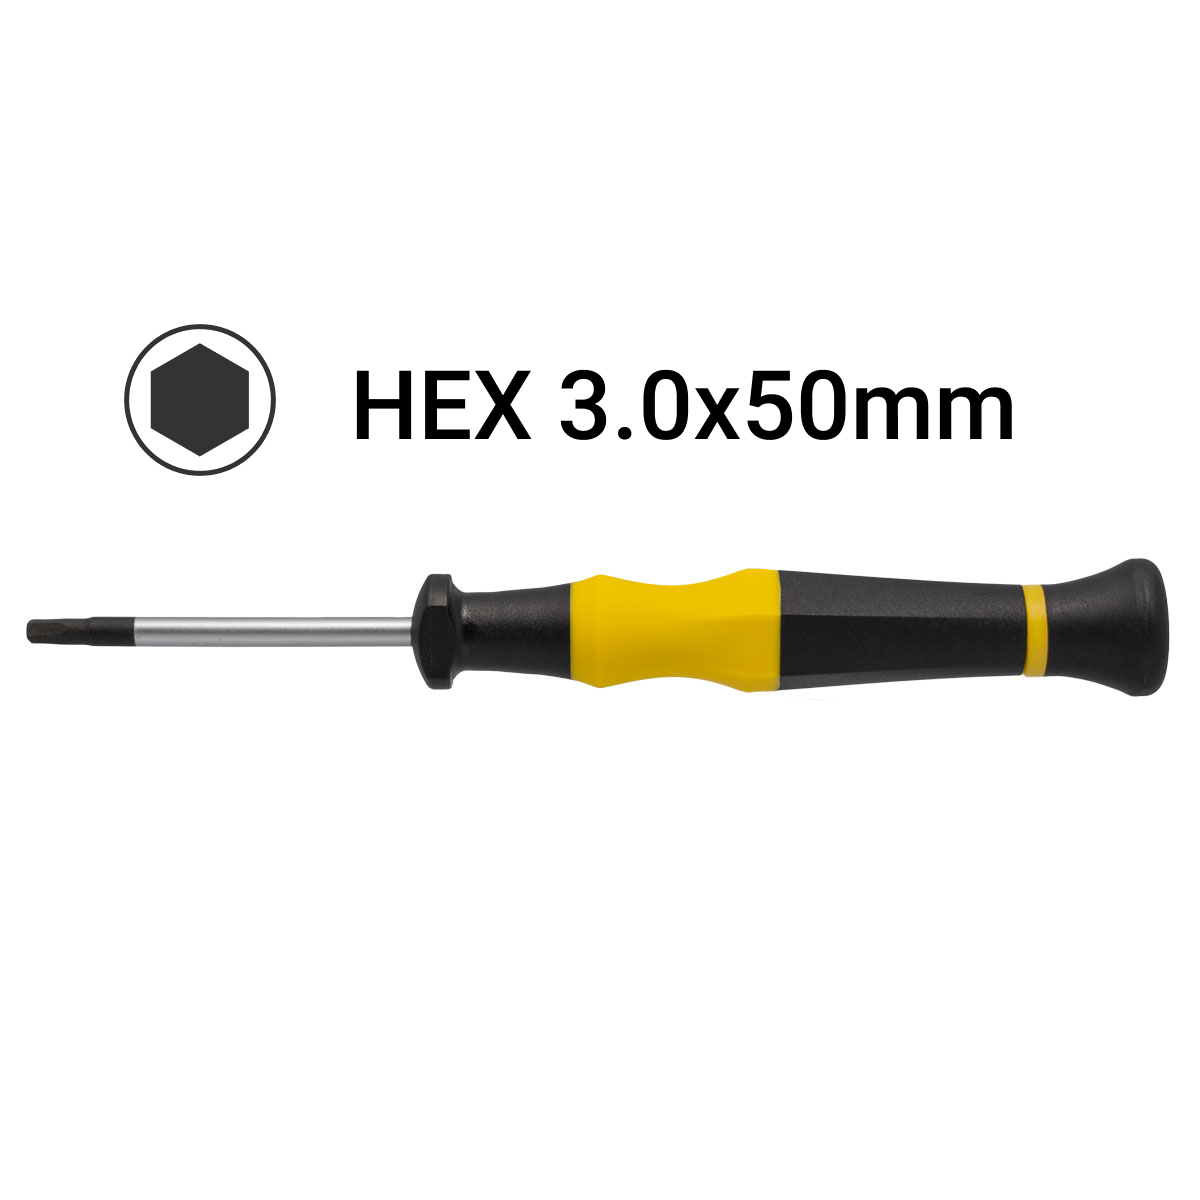 H3.0x50mm Hex Precision Screwdriver